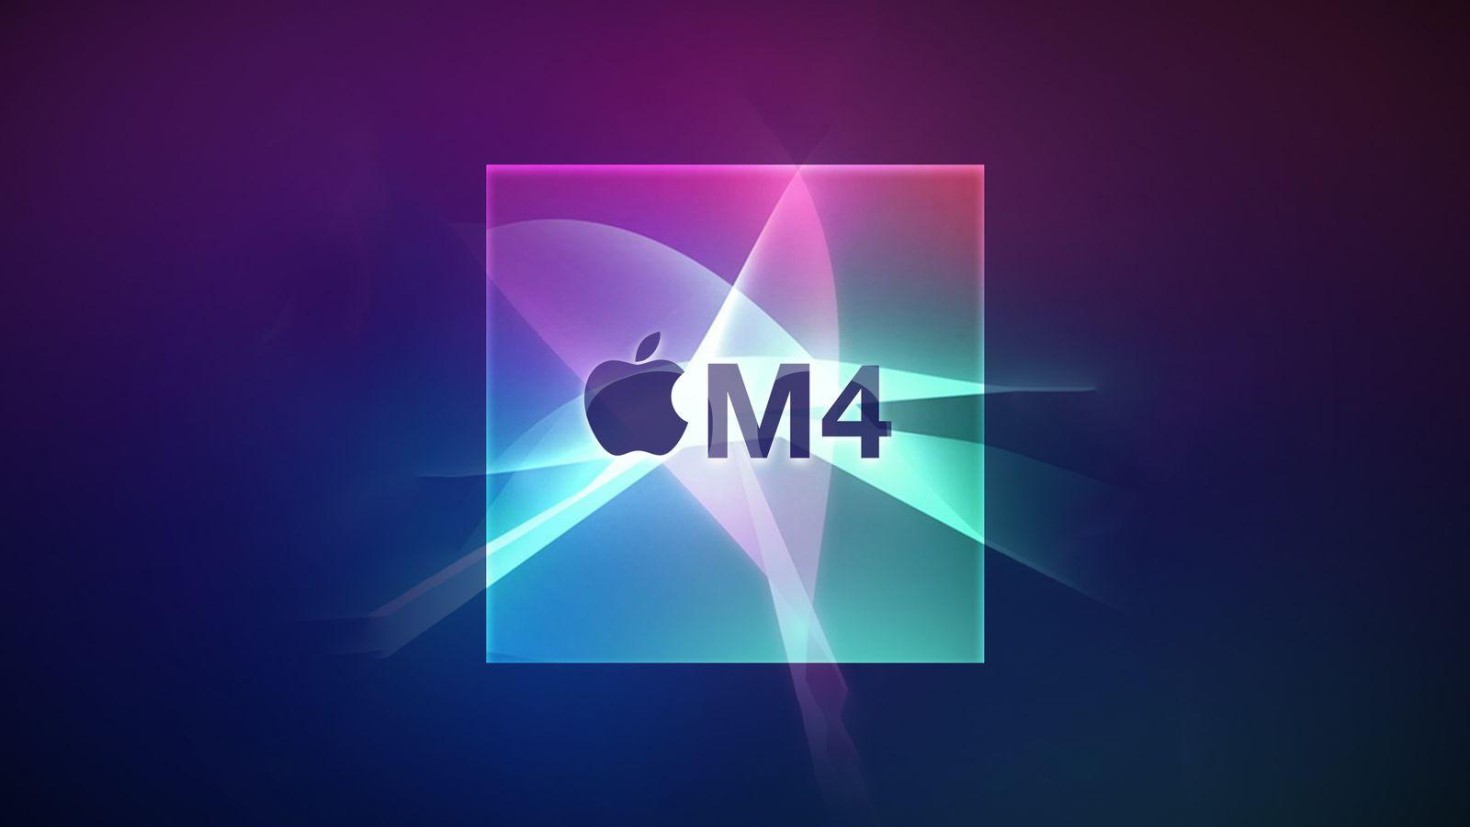 Bỏ qua thế hệ M3, Apple có thể sẽ cho ra mắt Mac Mini M4 vào cuối năm nay